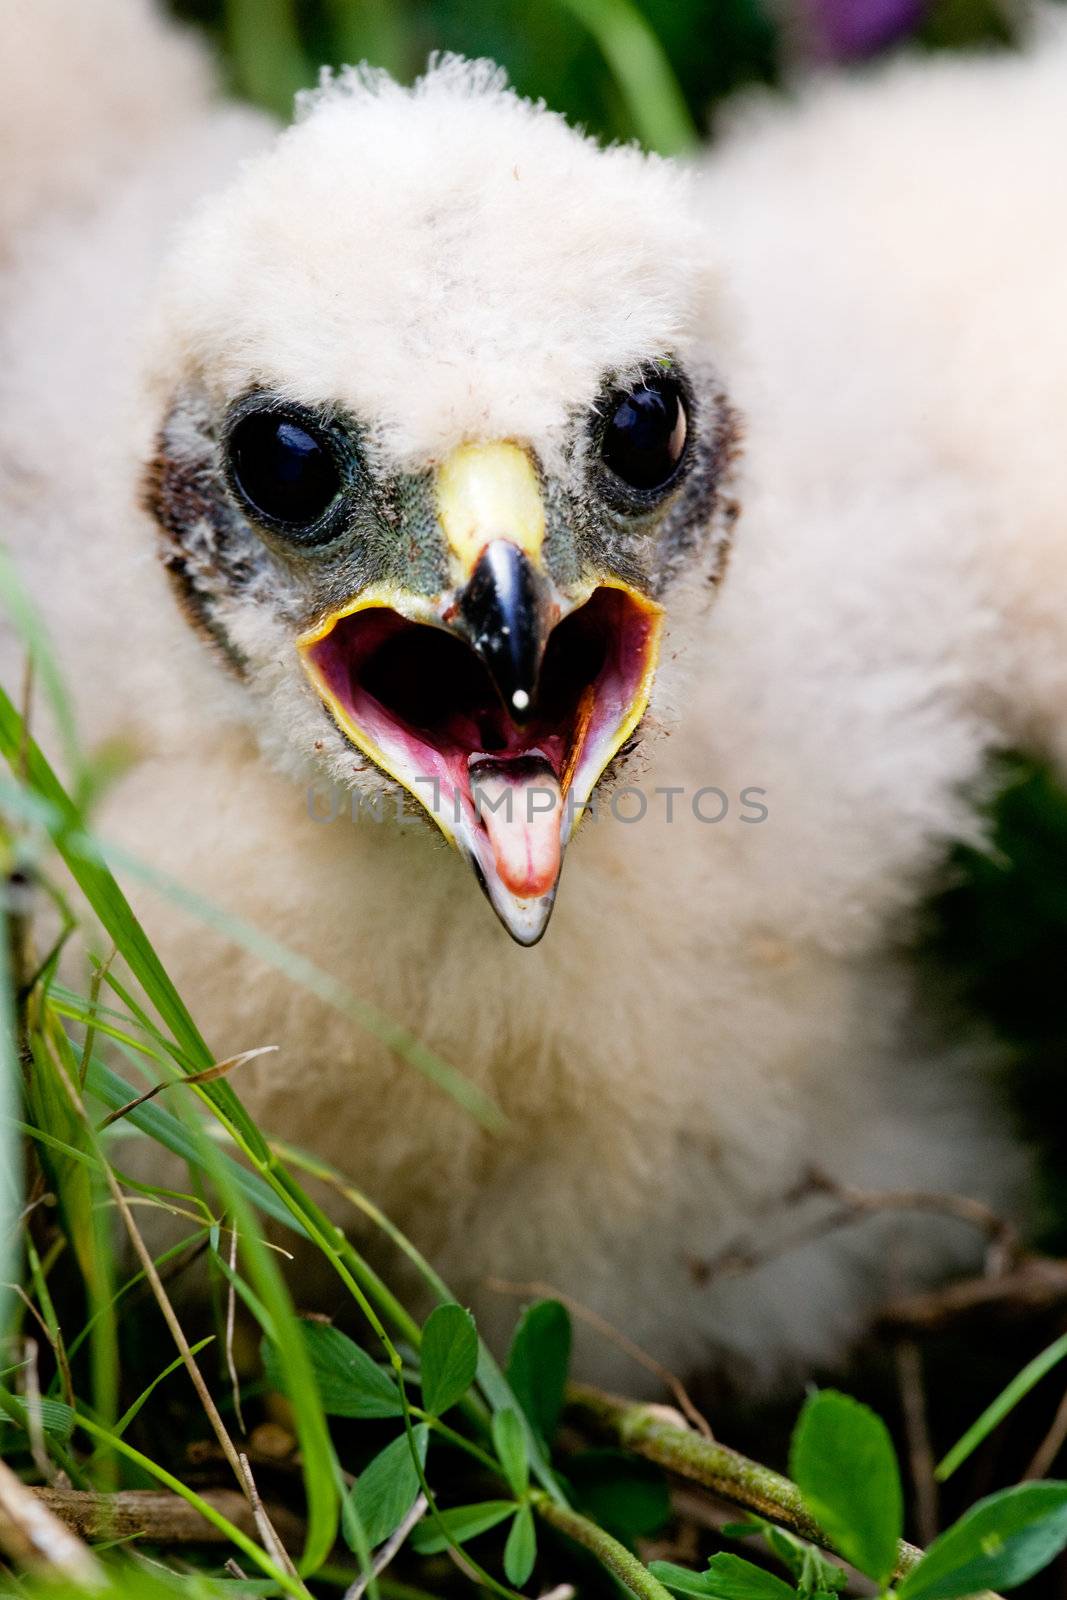 Prairie Falcon chick (Falco mexicanus) in a nest